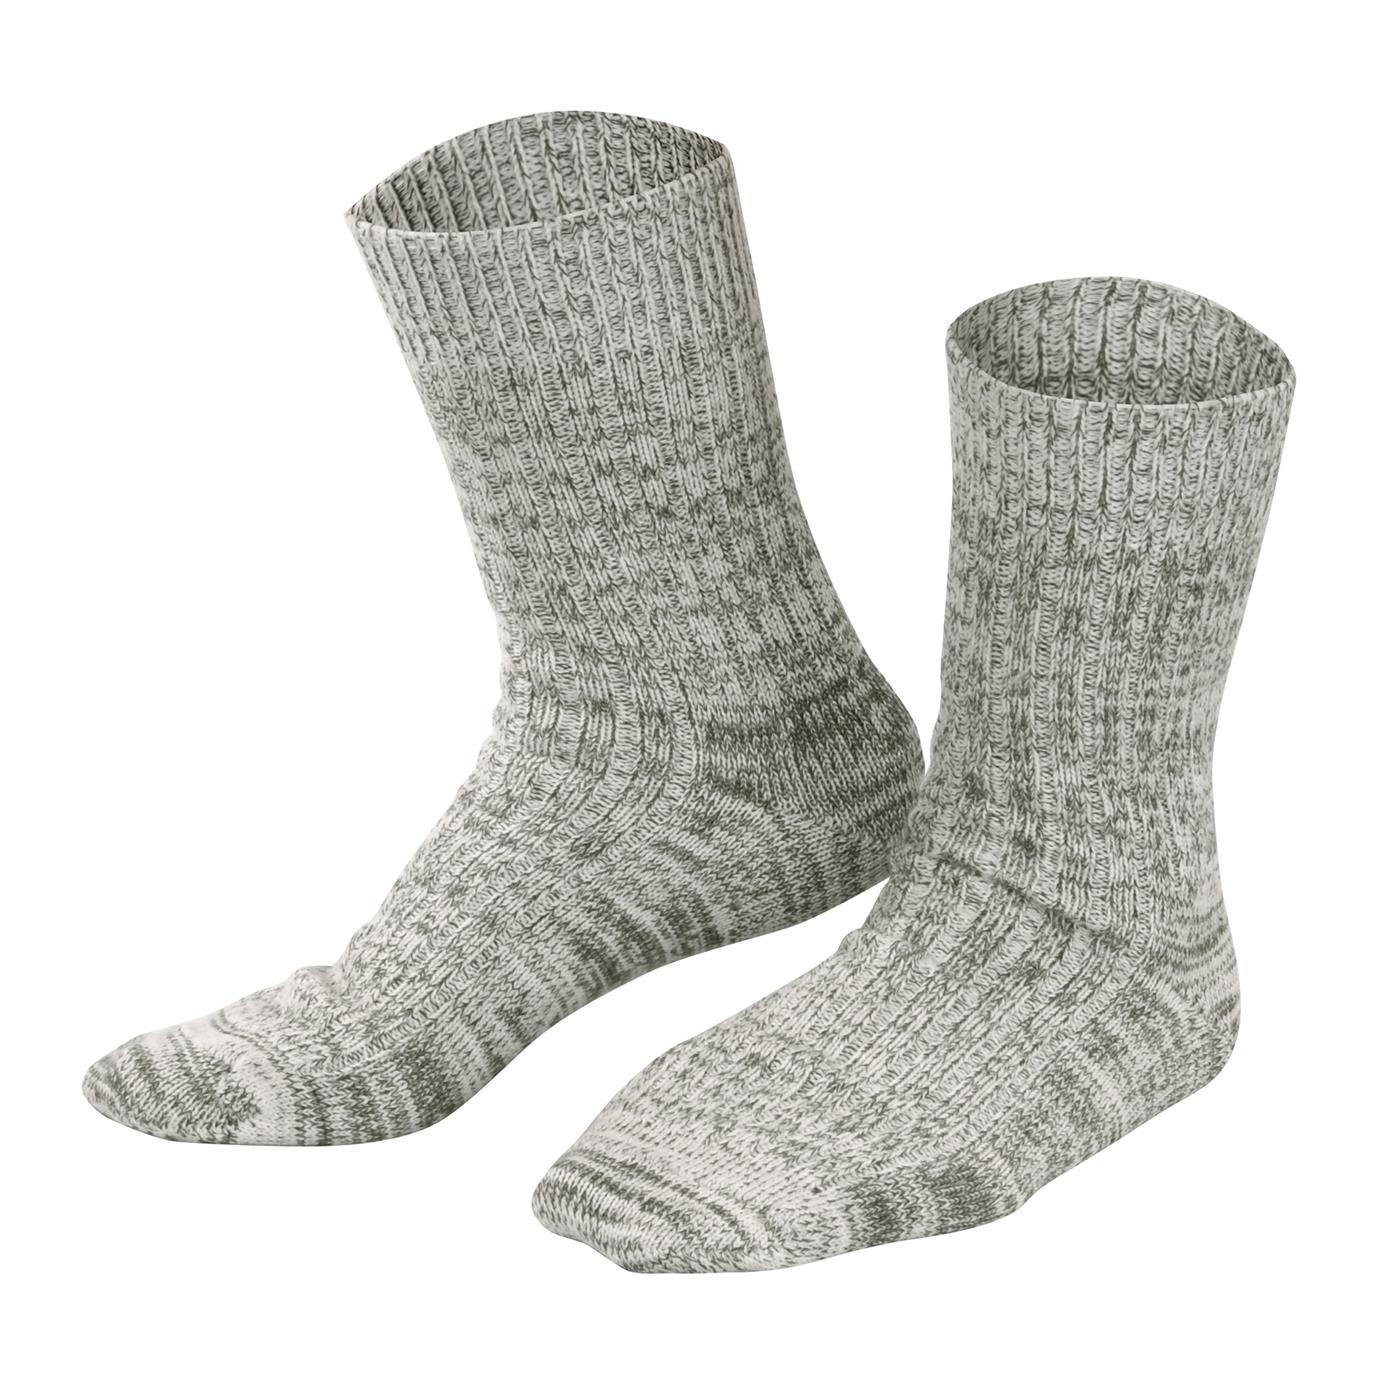 Norwegen socks